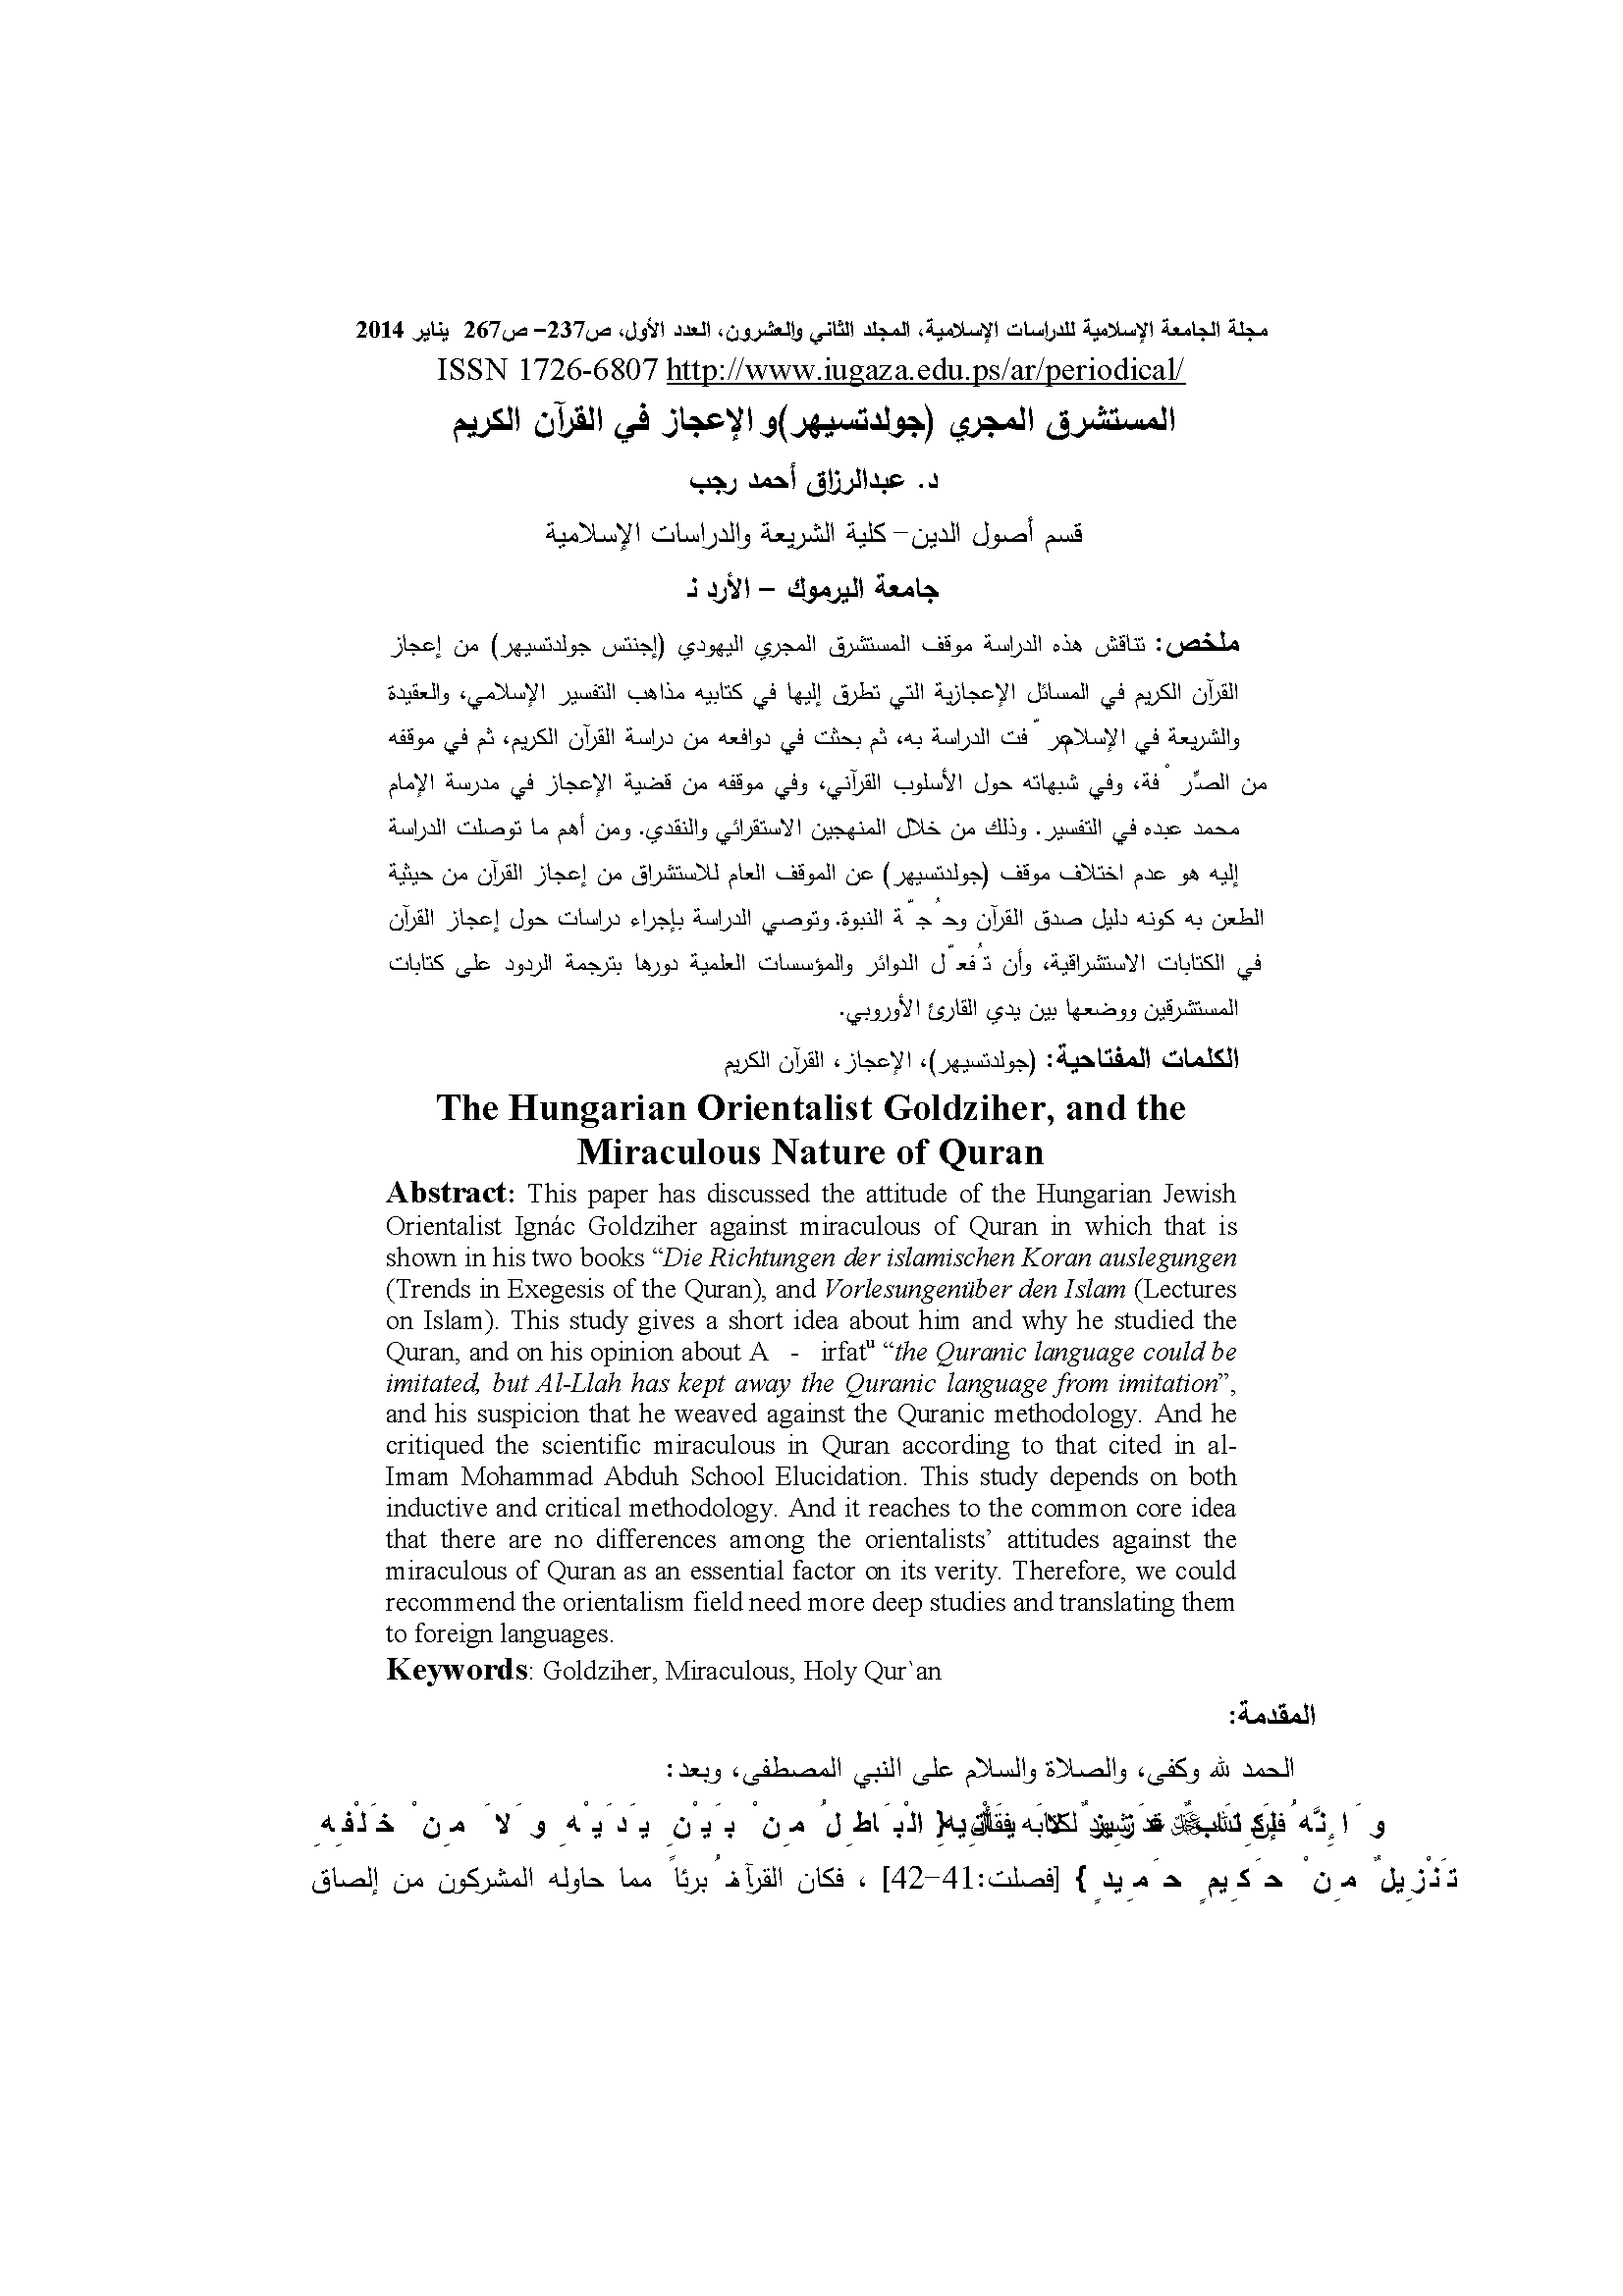 تحميل كتاب المستشرق المجري (جولدتسيهر) والإعجاز في القرآن الكريم لـِ: الدكتور عبد الرزاق أحمد أسعد رجب